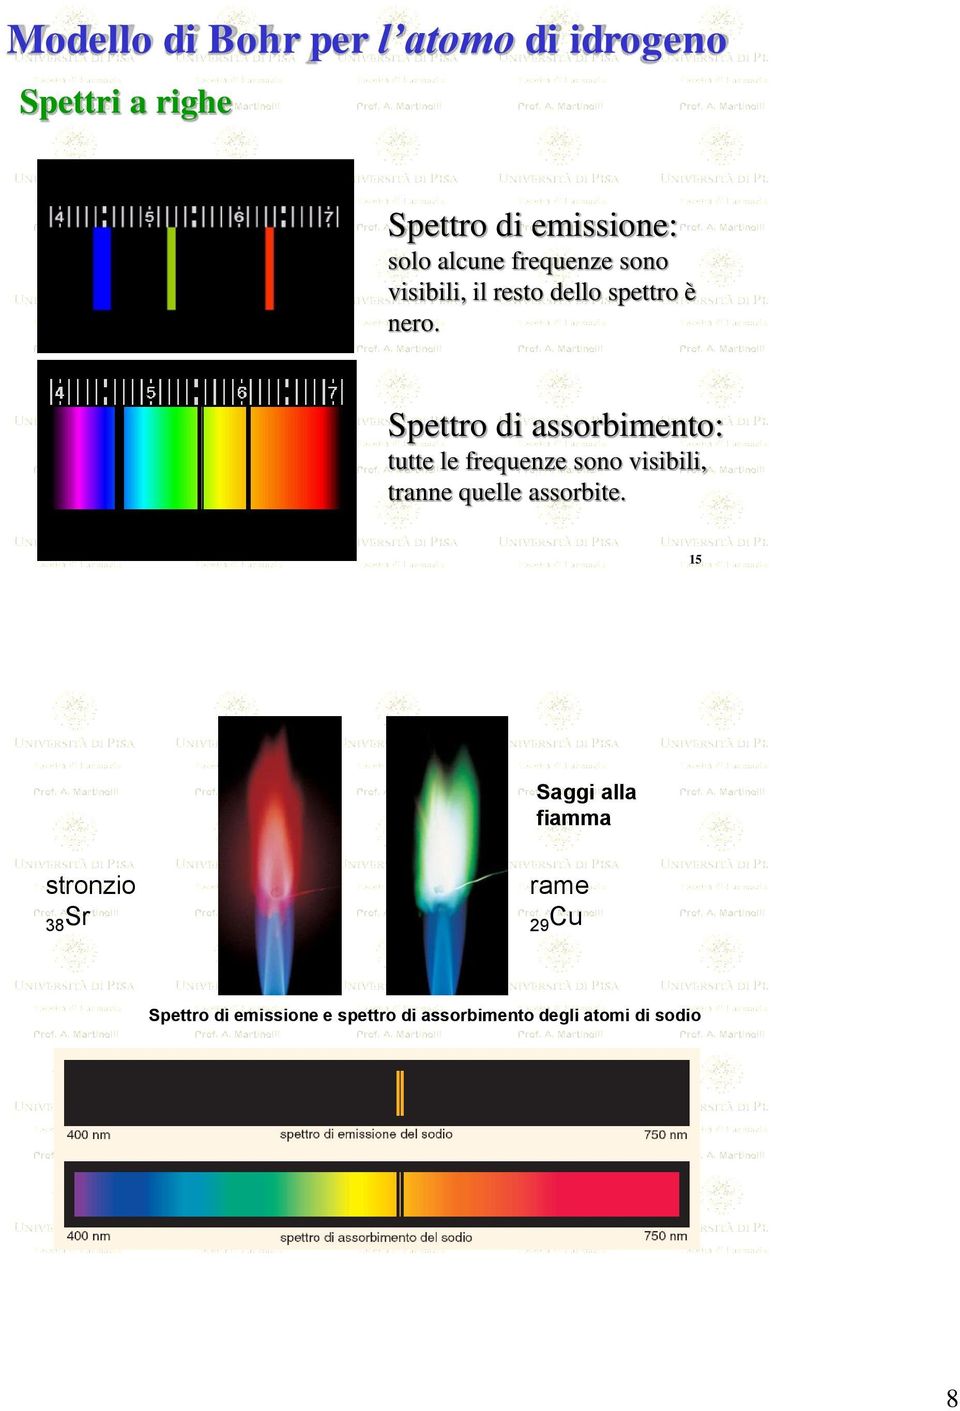 Spettro di assorbimento: tutte le frequenze sono visibili, tranne quelle